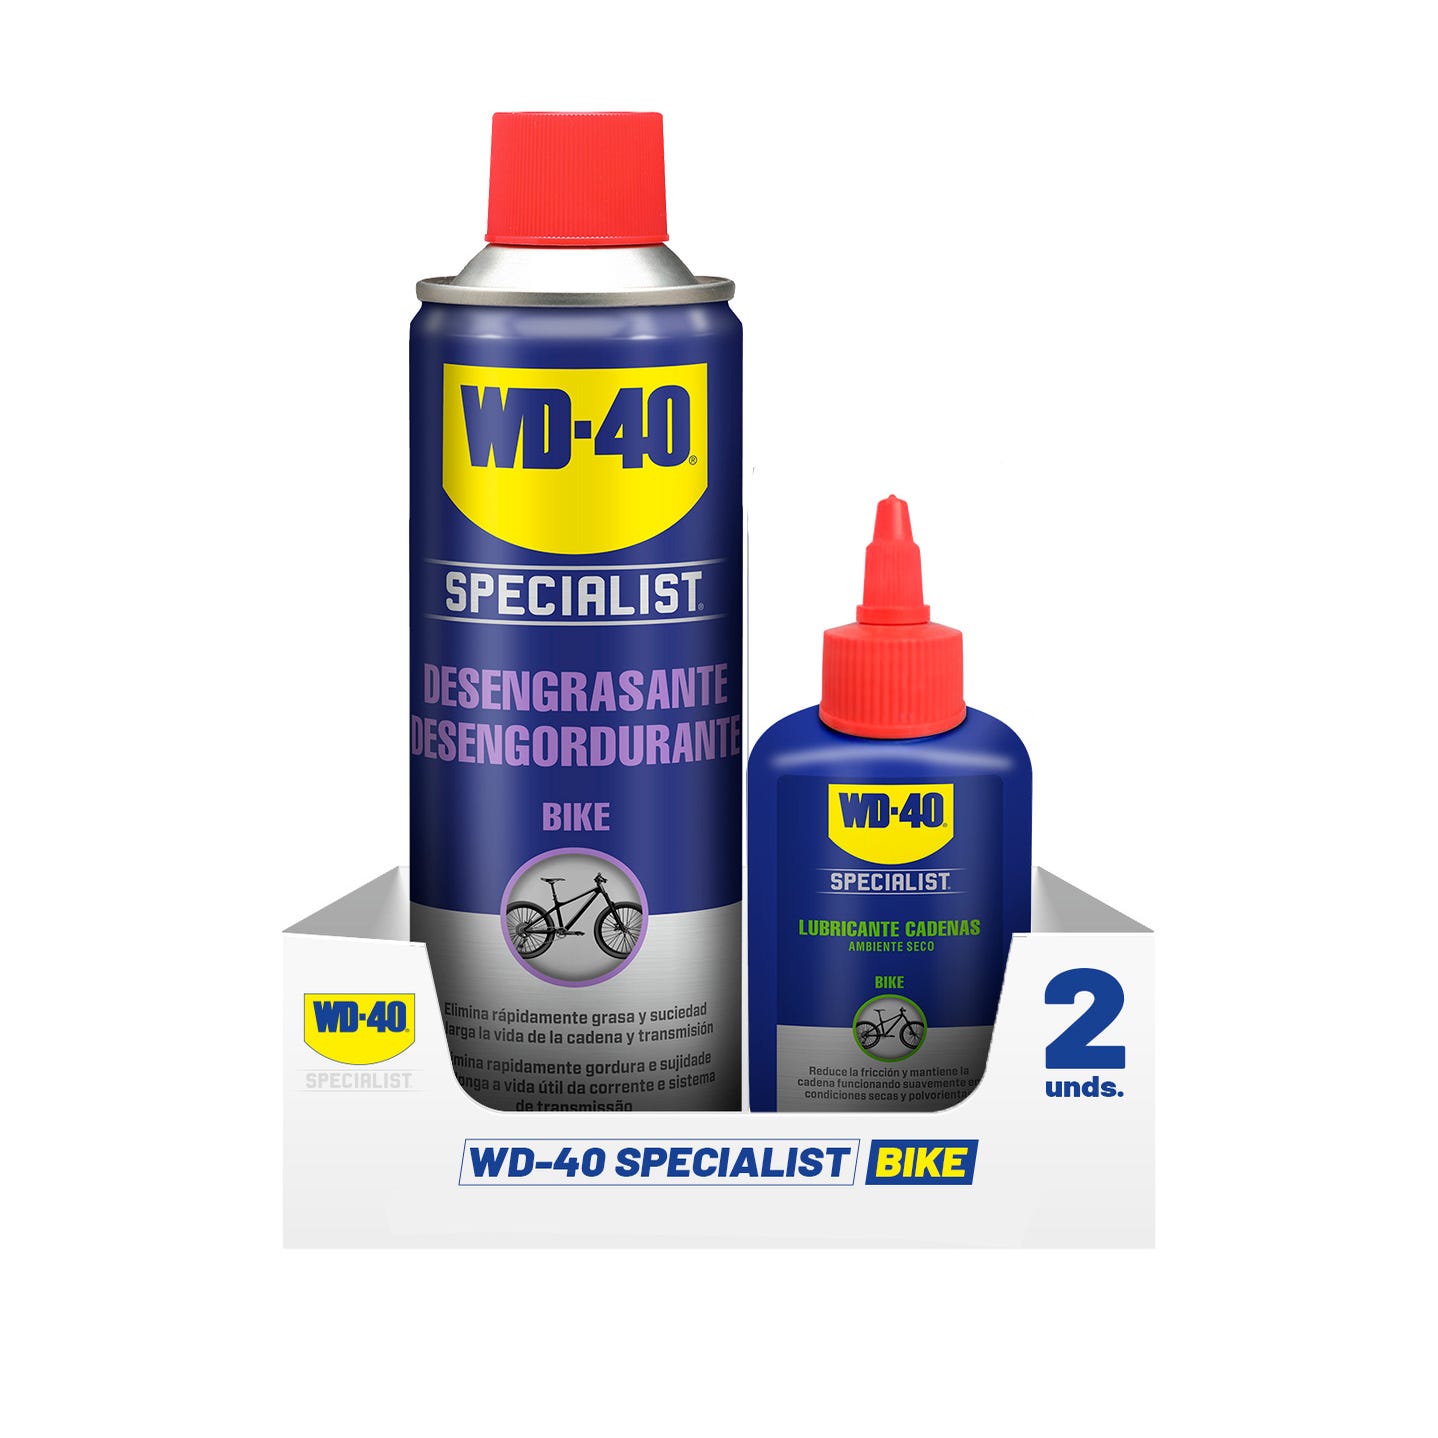 WD40 Bipack Specialist Desengrasante + Lubricante Cadenas Seco